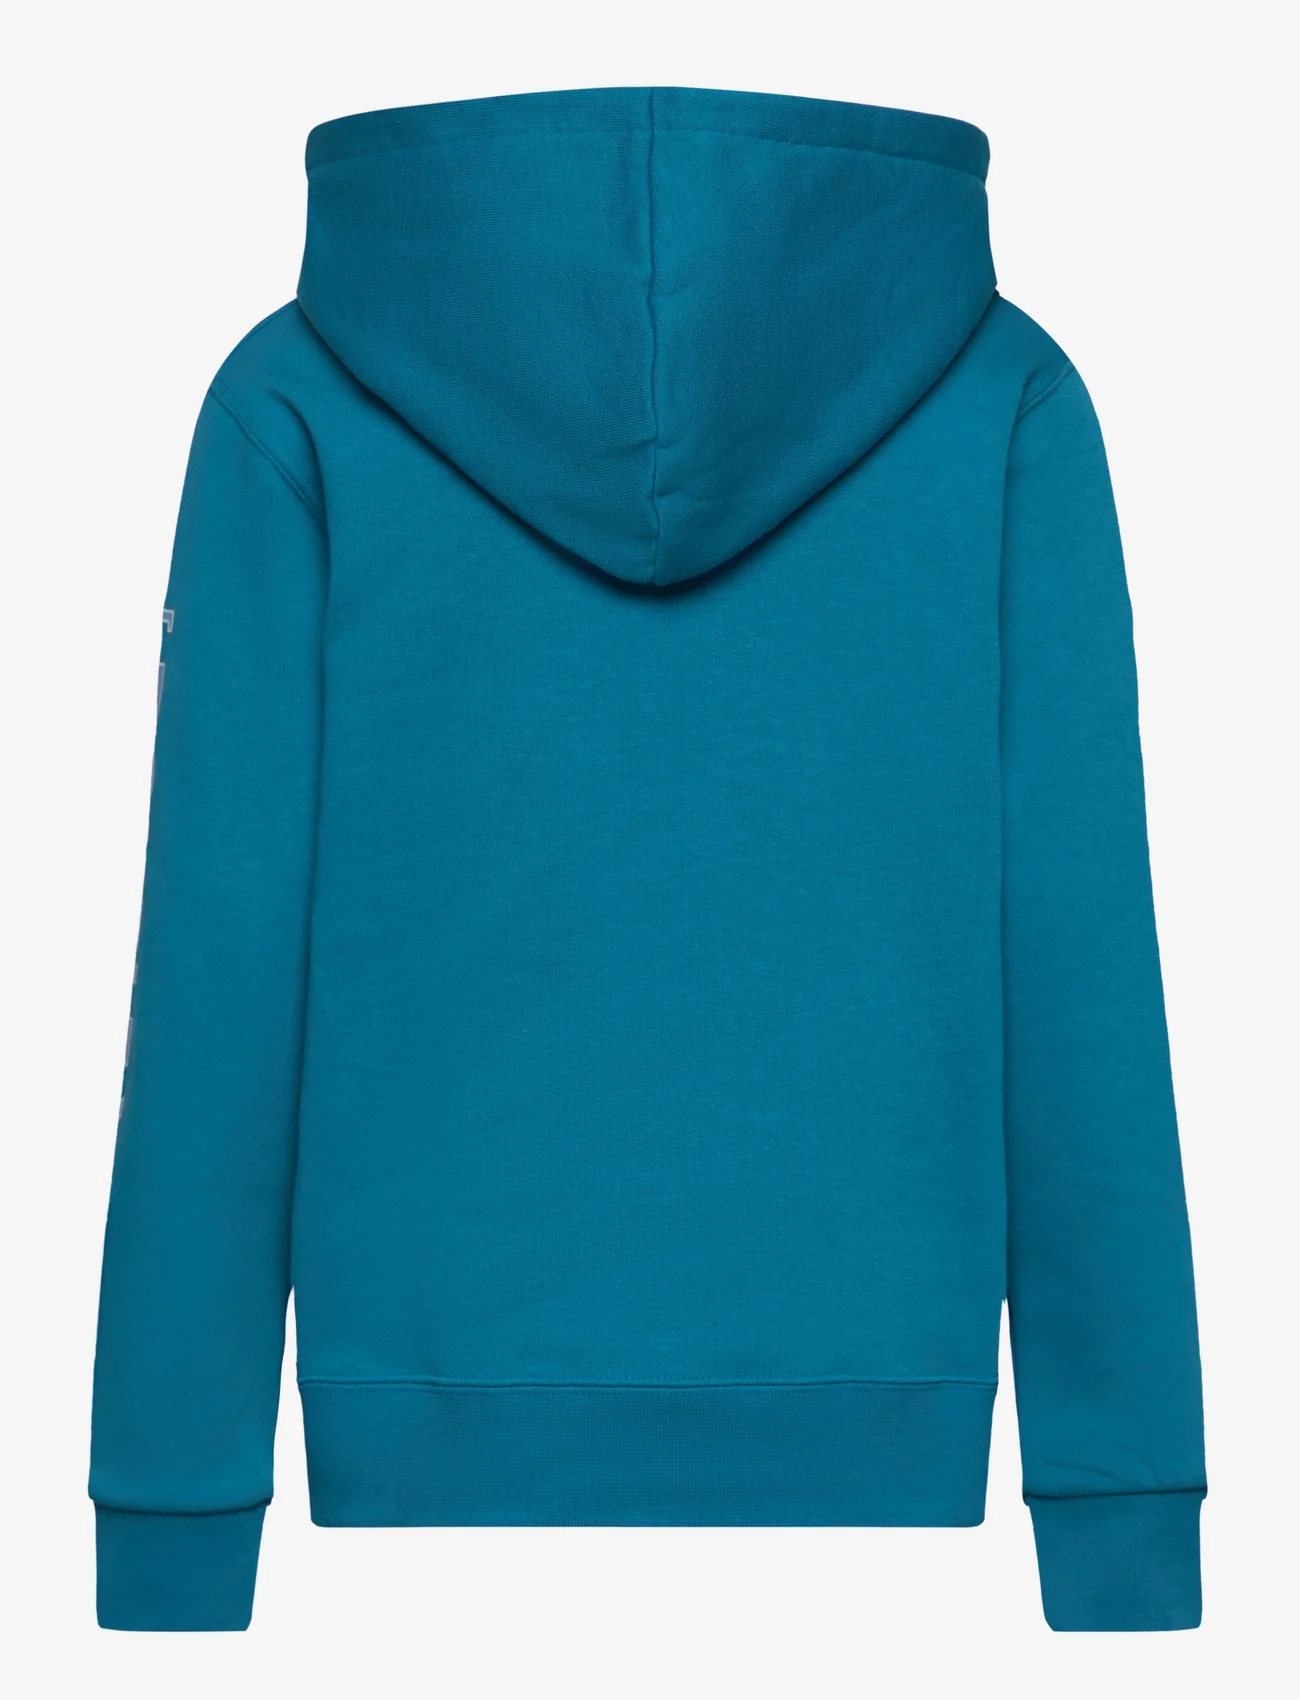 Wood Wood - Izzy kids sleeve print hoodie - kapuzenpullover - blue - 1